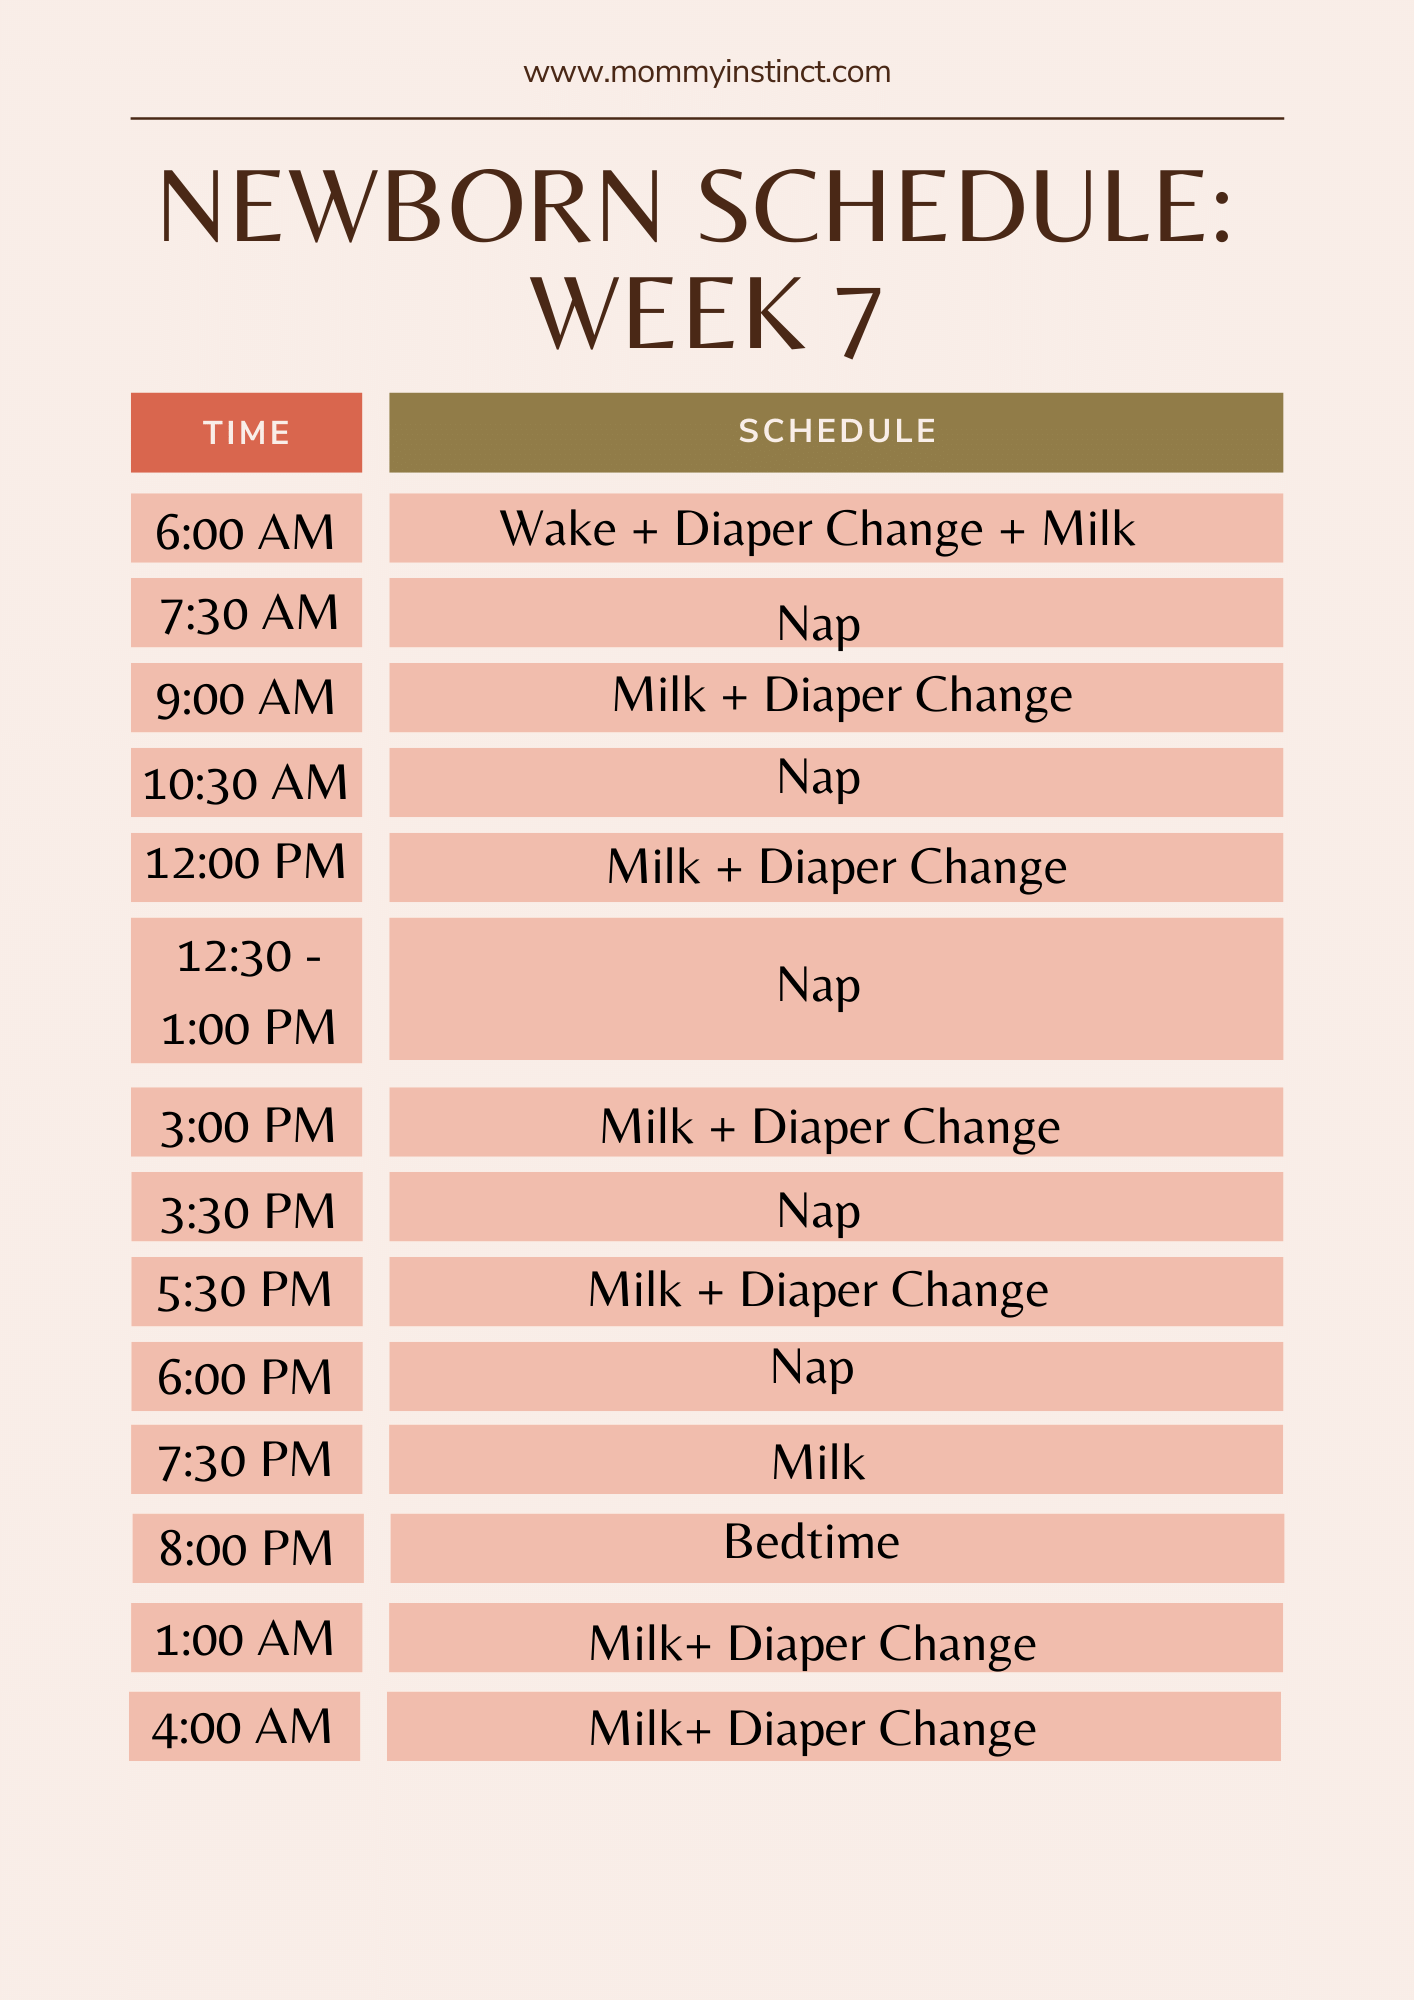 Newborn sleep schedule week 7